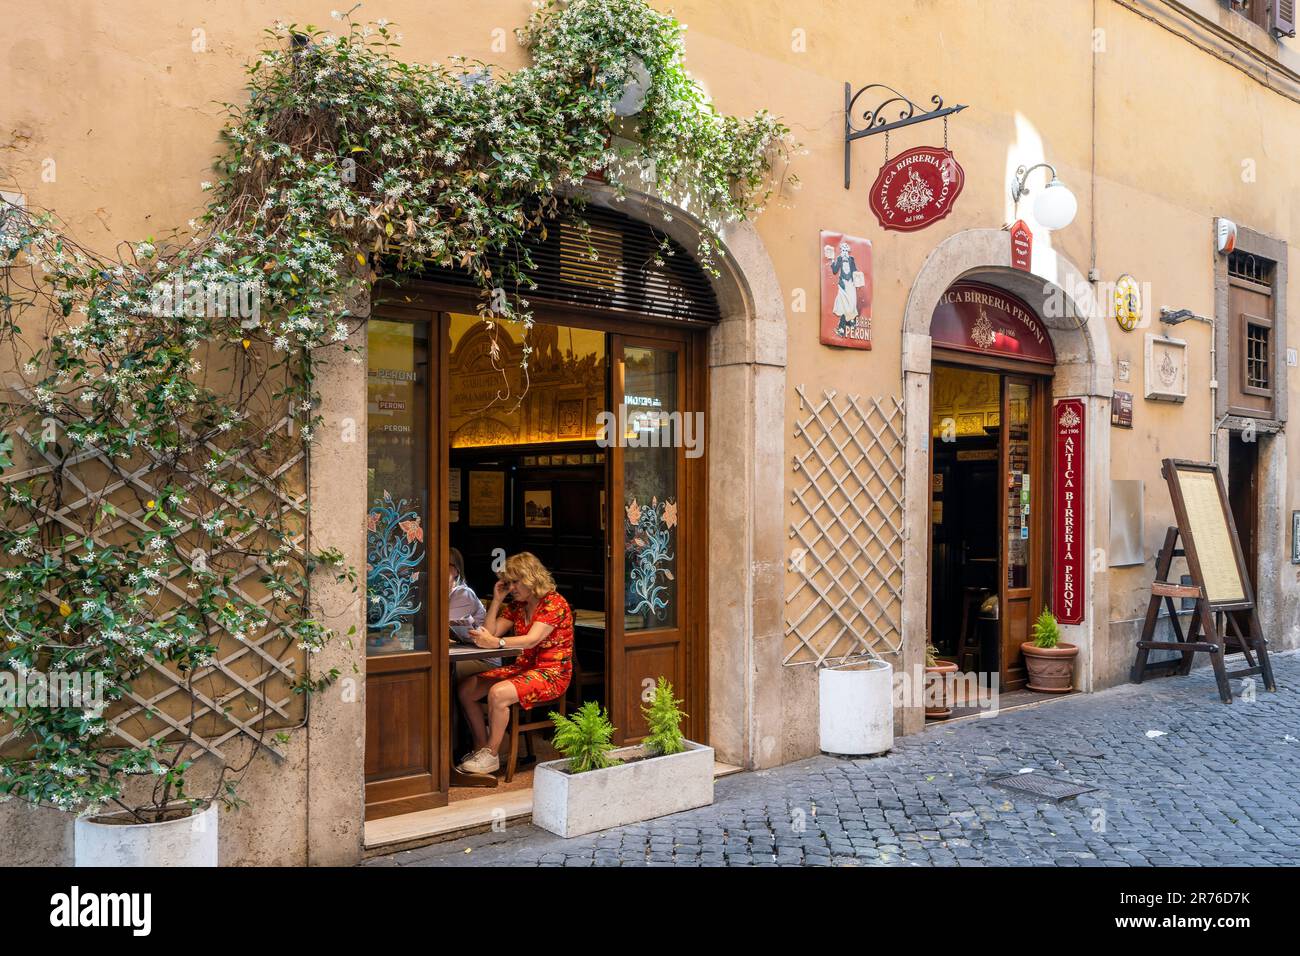 Antica Birreria Peroni restaurant, Rome, Lazio, Italy Stock Photo